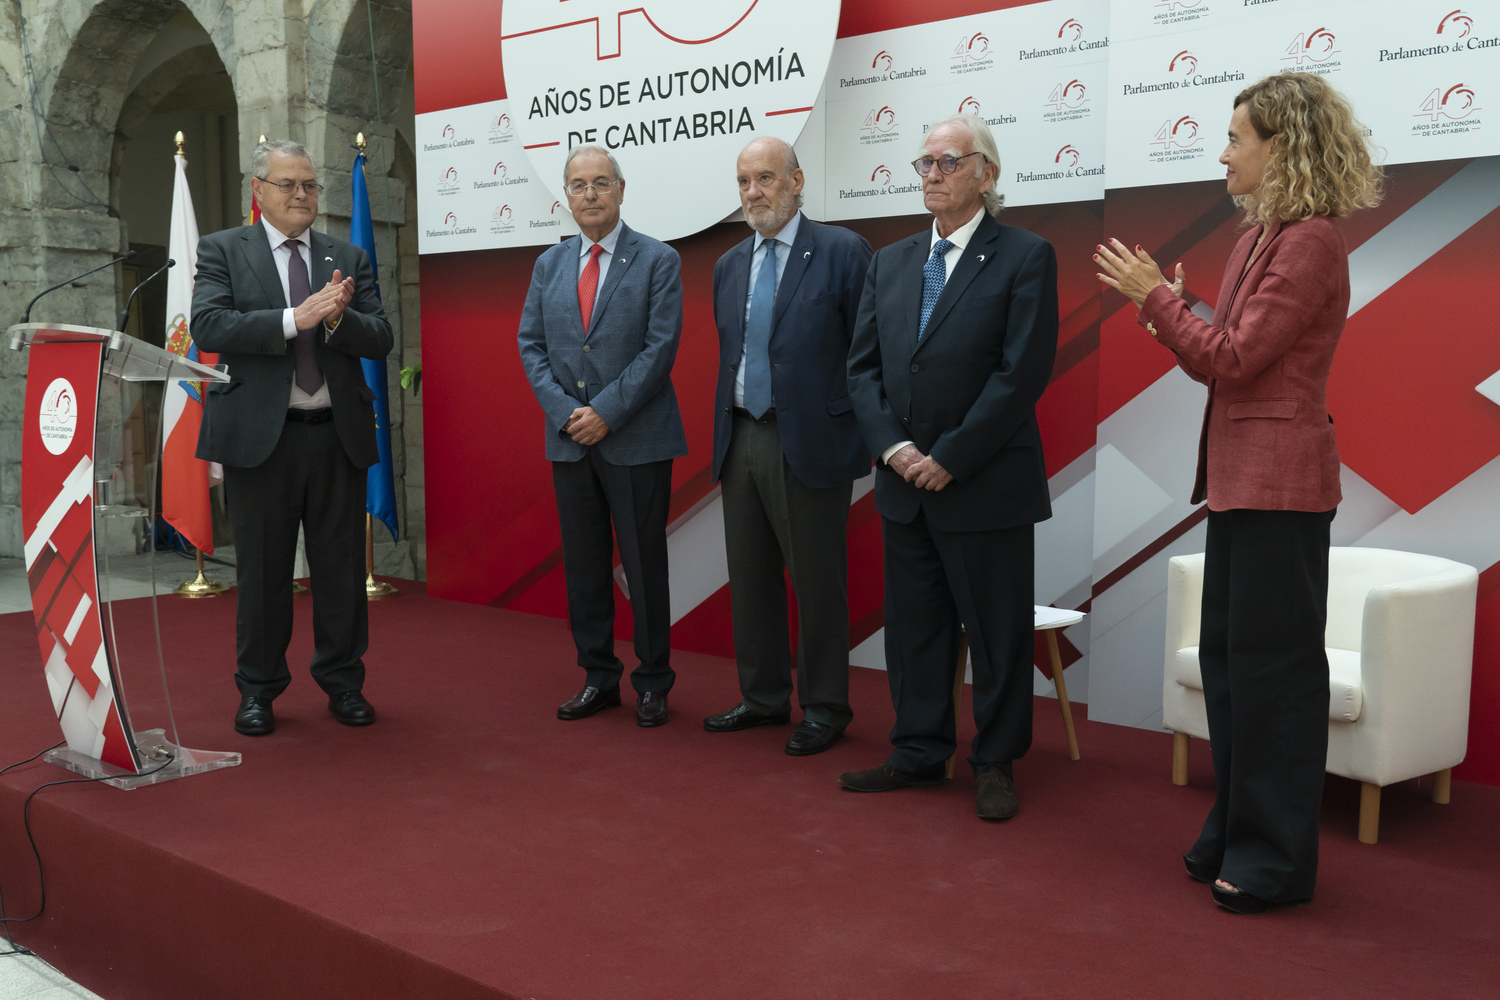 La presidenta del Congreso de los Diputados, Meritxell Batet, participa en el Parlamento de Cantabria en el acto de conmemoración del 40 aniversario del Estatuto de Autonomía.